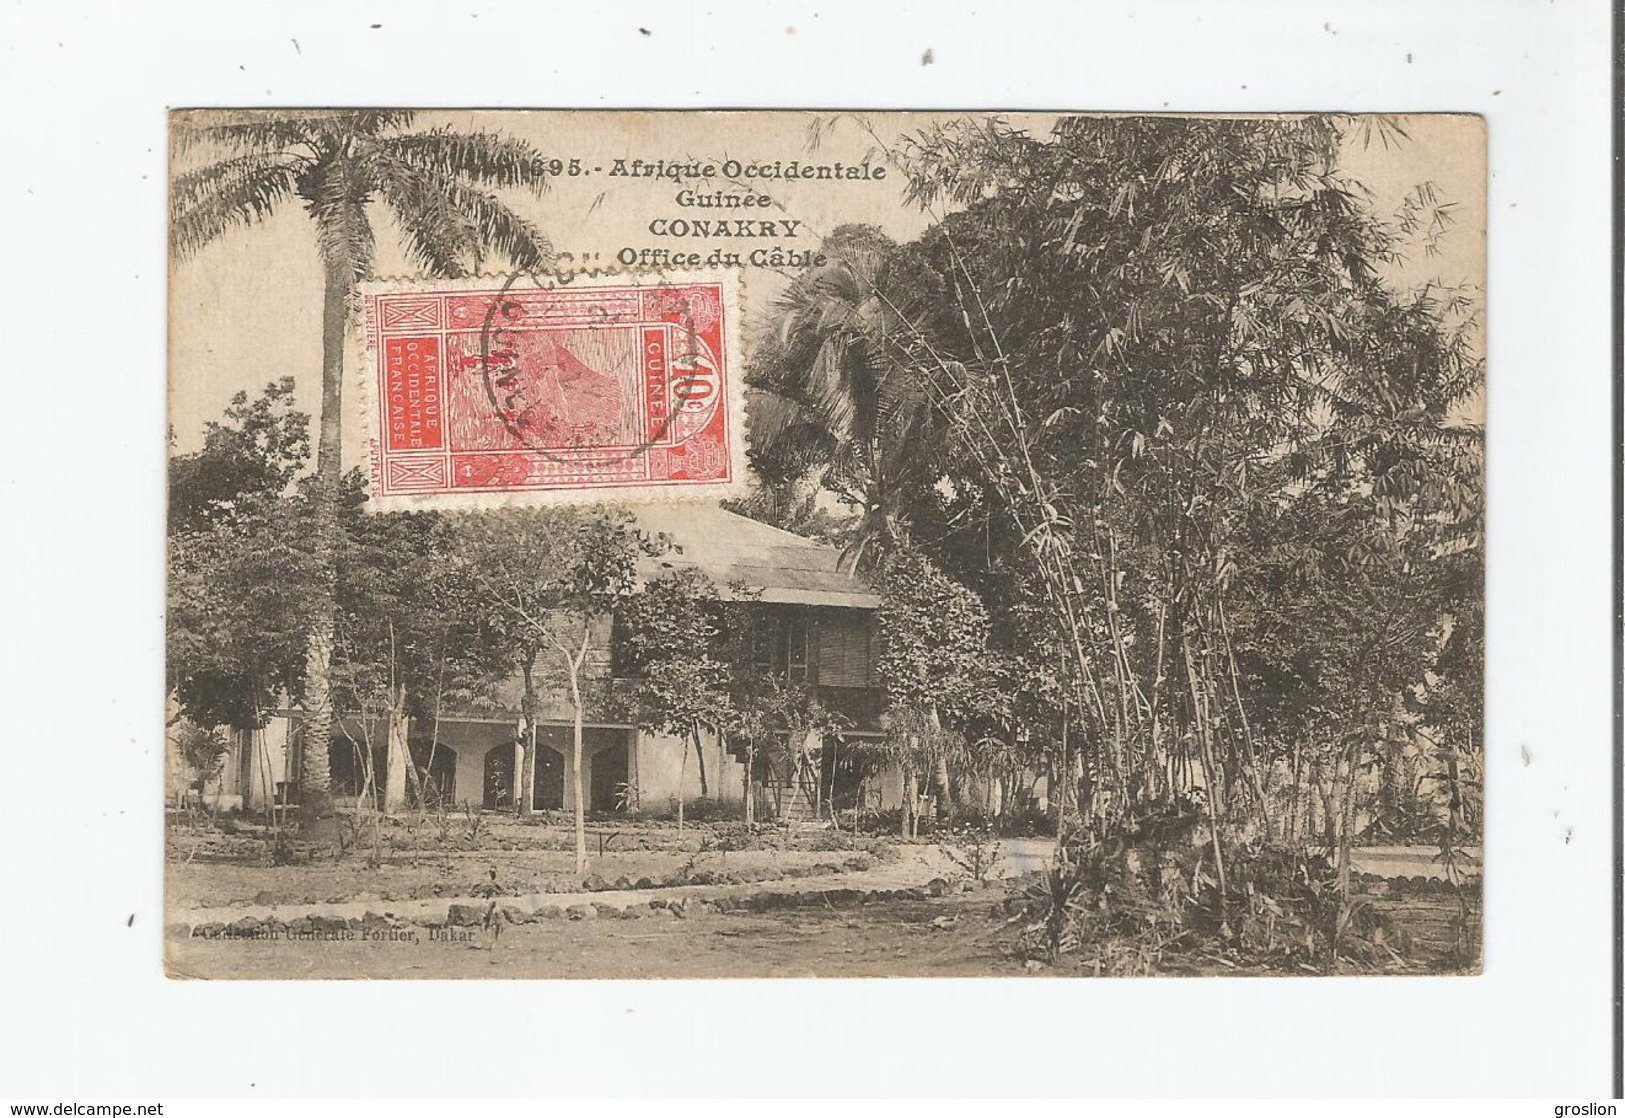 CONAKRY 395 GUINEE AFRIQUE OCCIDENTALE OFFICE DU CABLE 1922 - Guinée